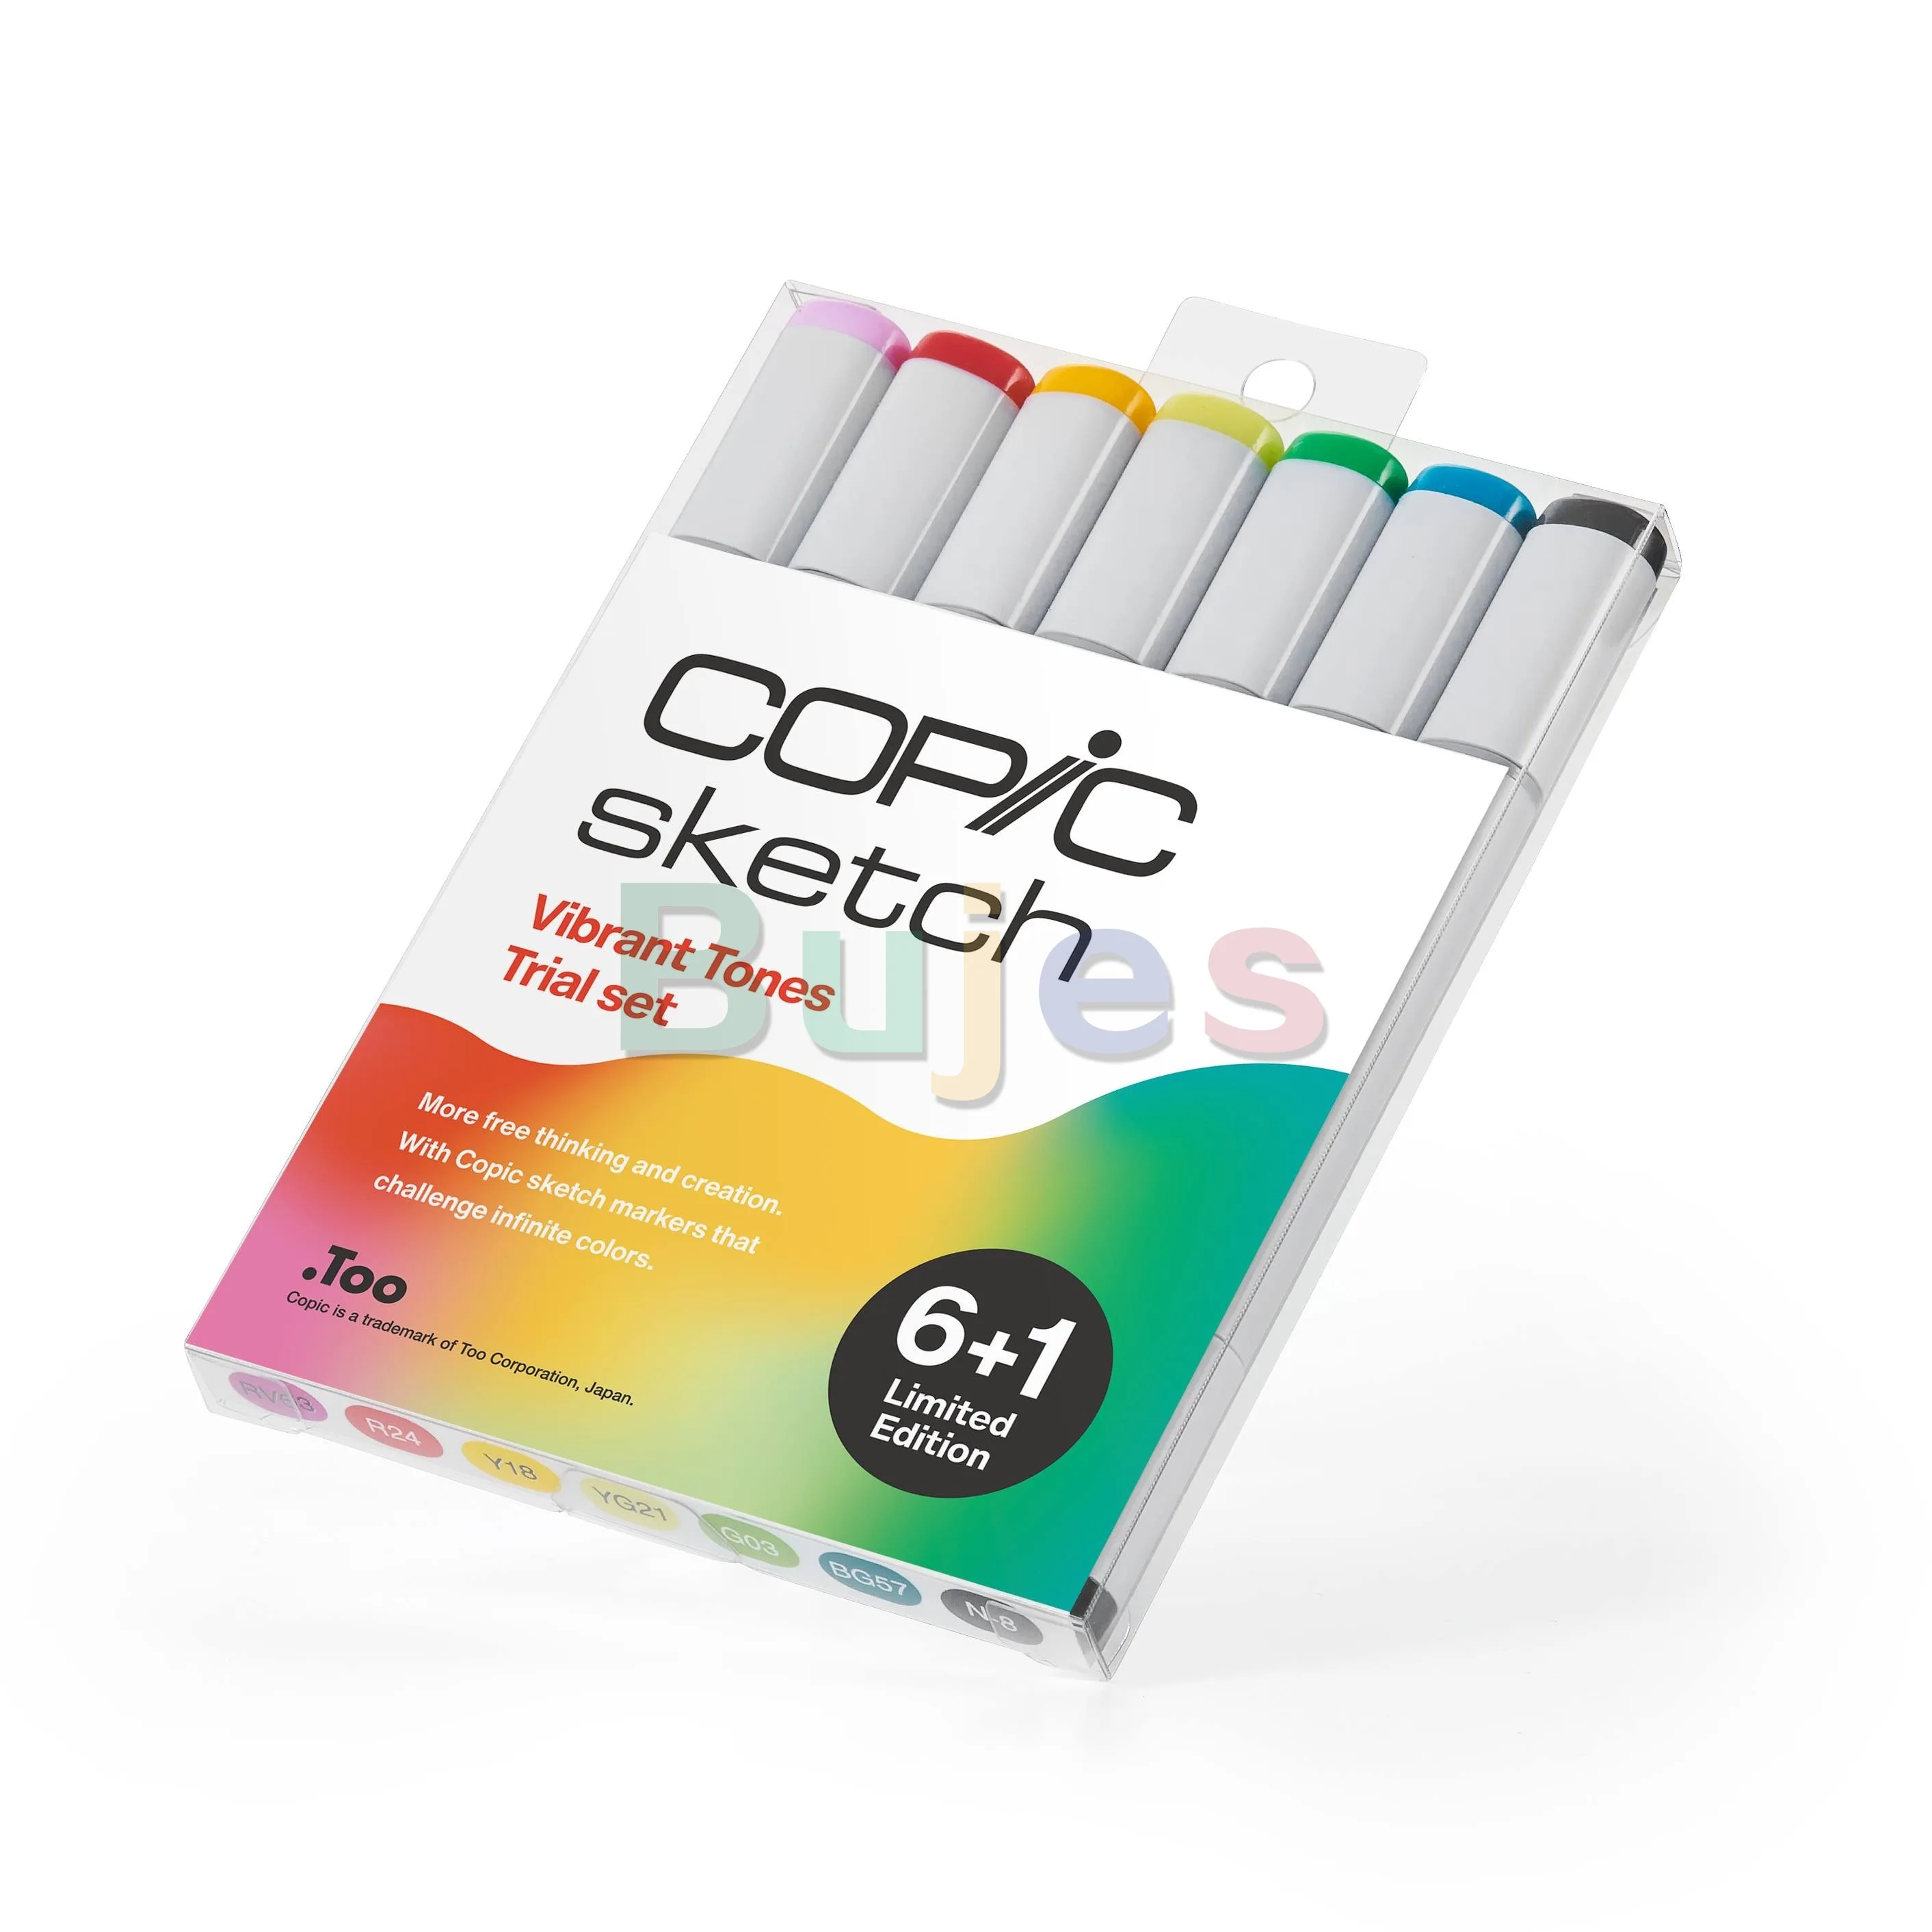 Комплект New Edition, цвят на кожата Copic CG РГ, маркери за скици Copic, оригинални художествени четки и връхчета